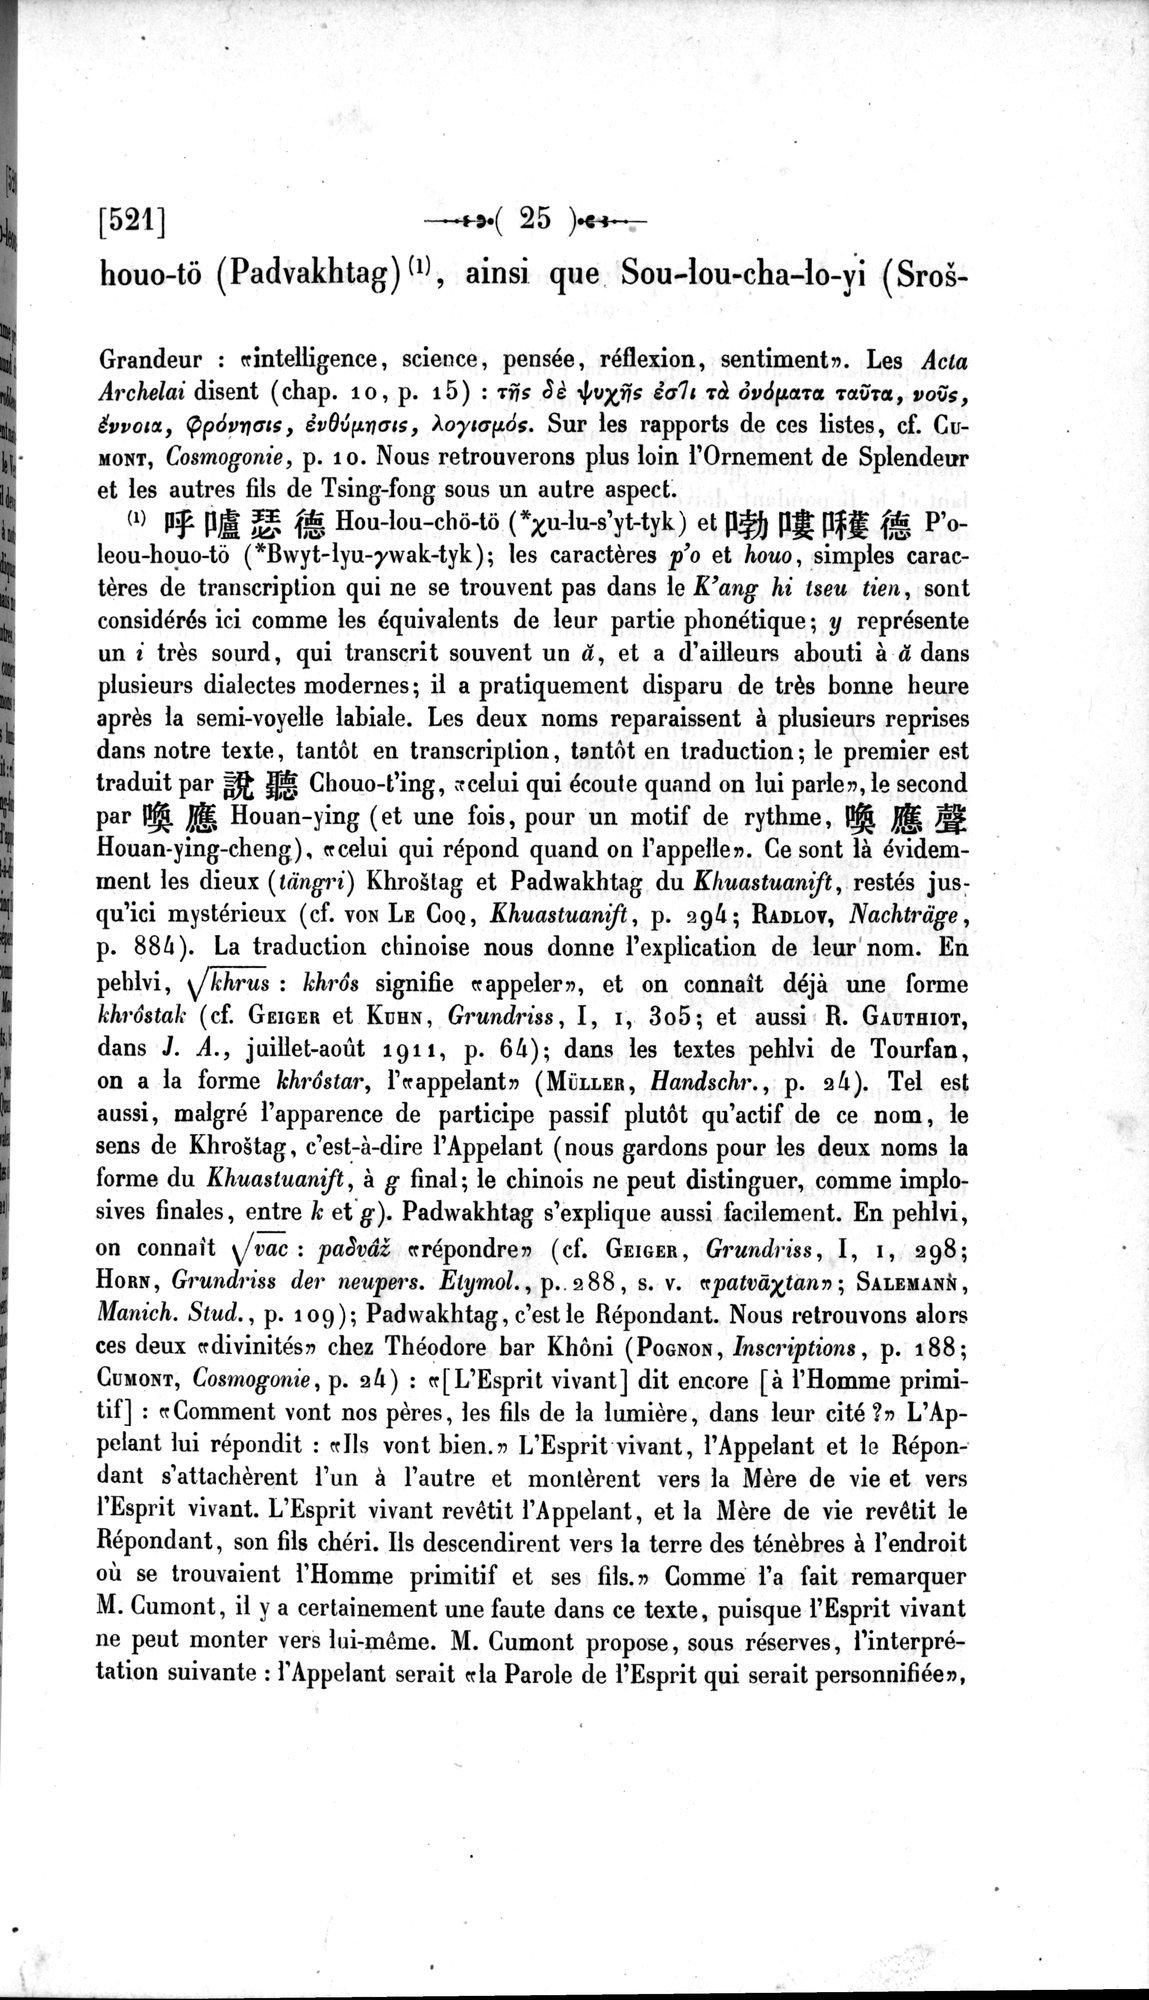 Un traité manichéen retrouvé en Chine : vol.1 / Page 35 (Grayscale High Resolution Image)